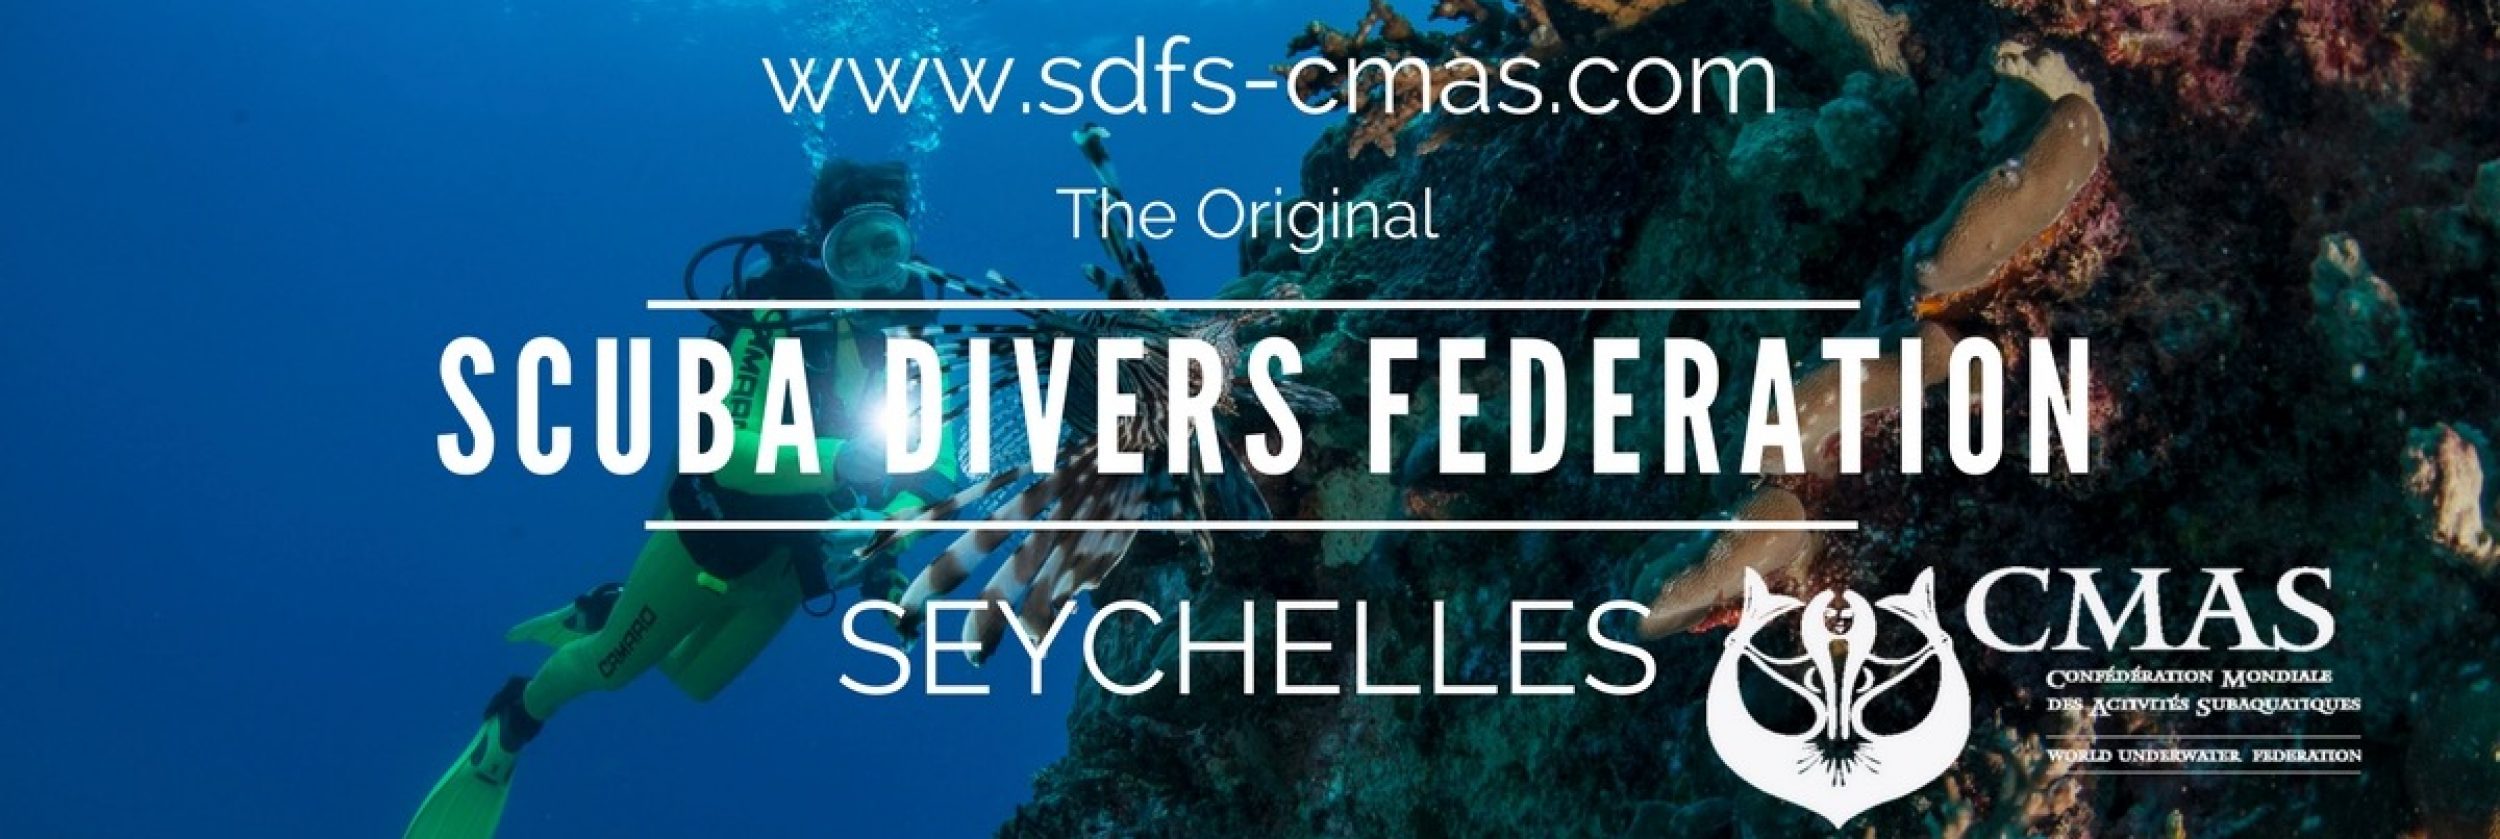 SDFS/CMAS